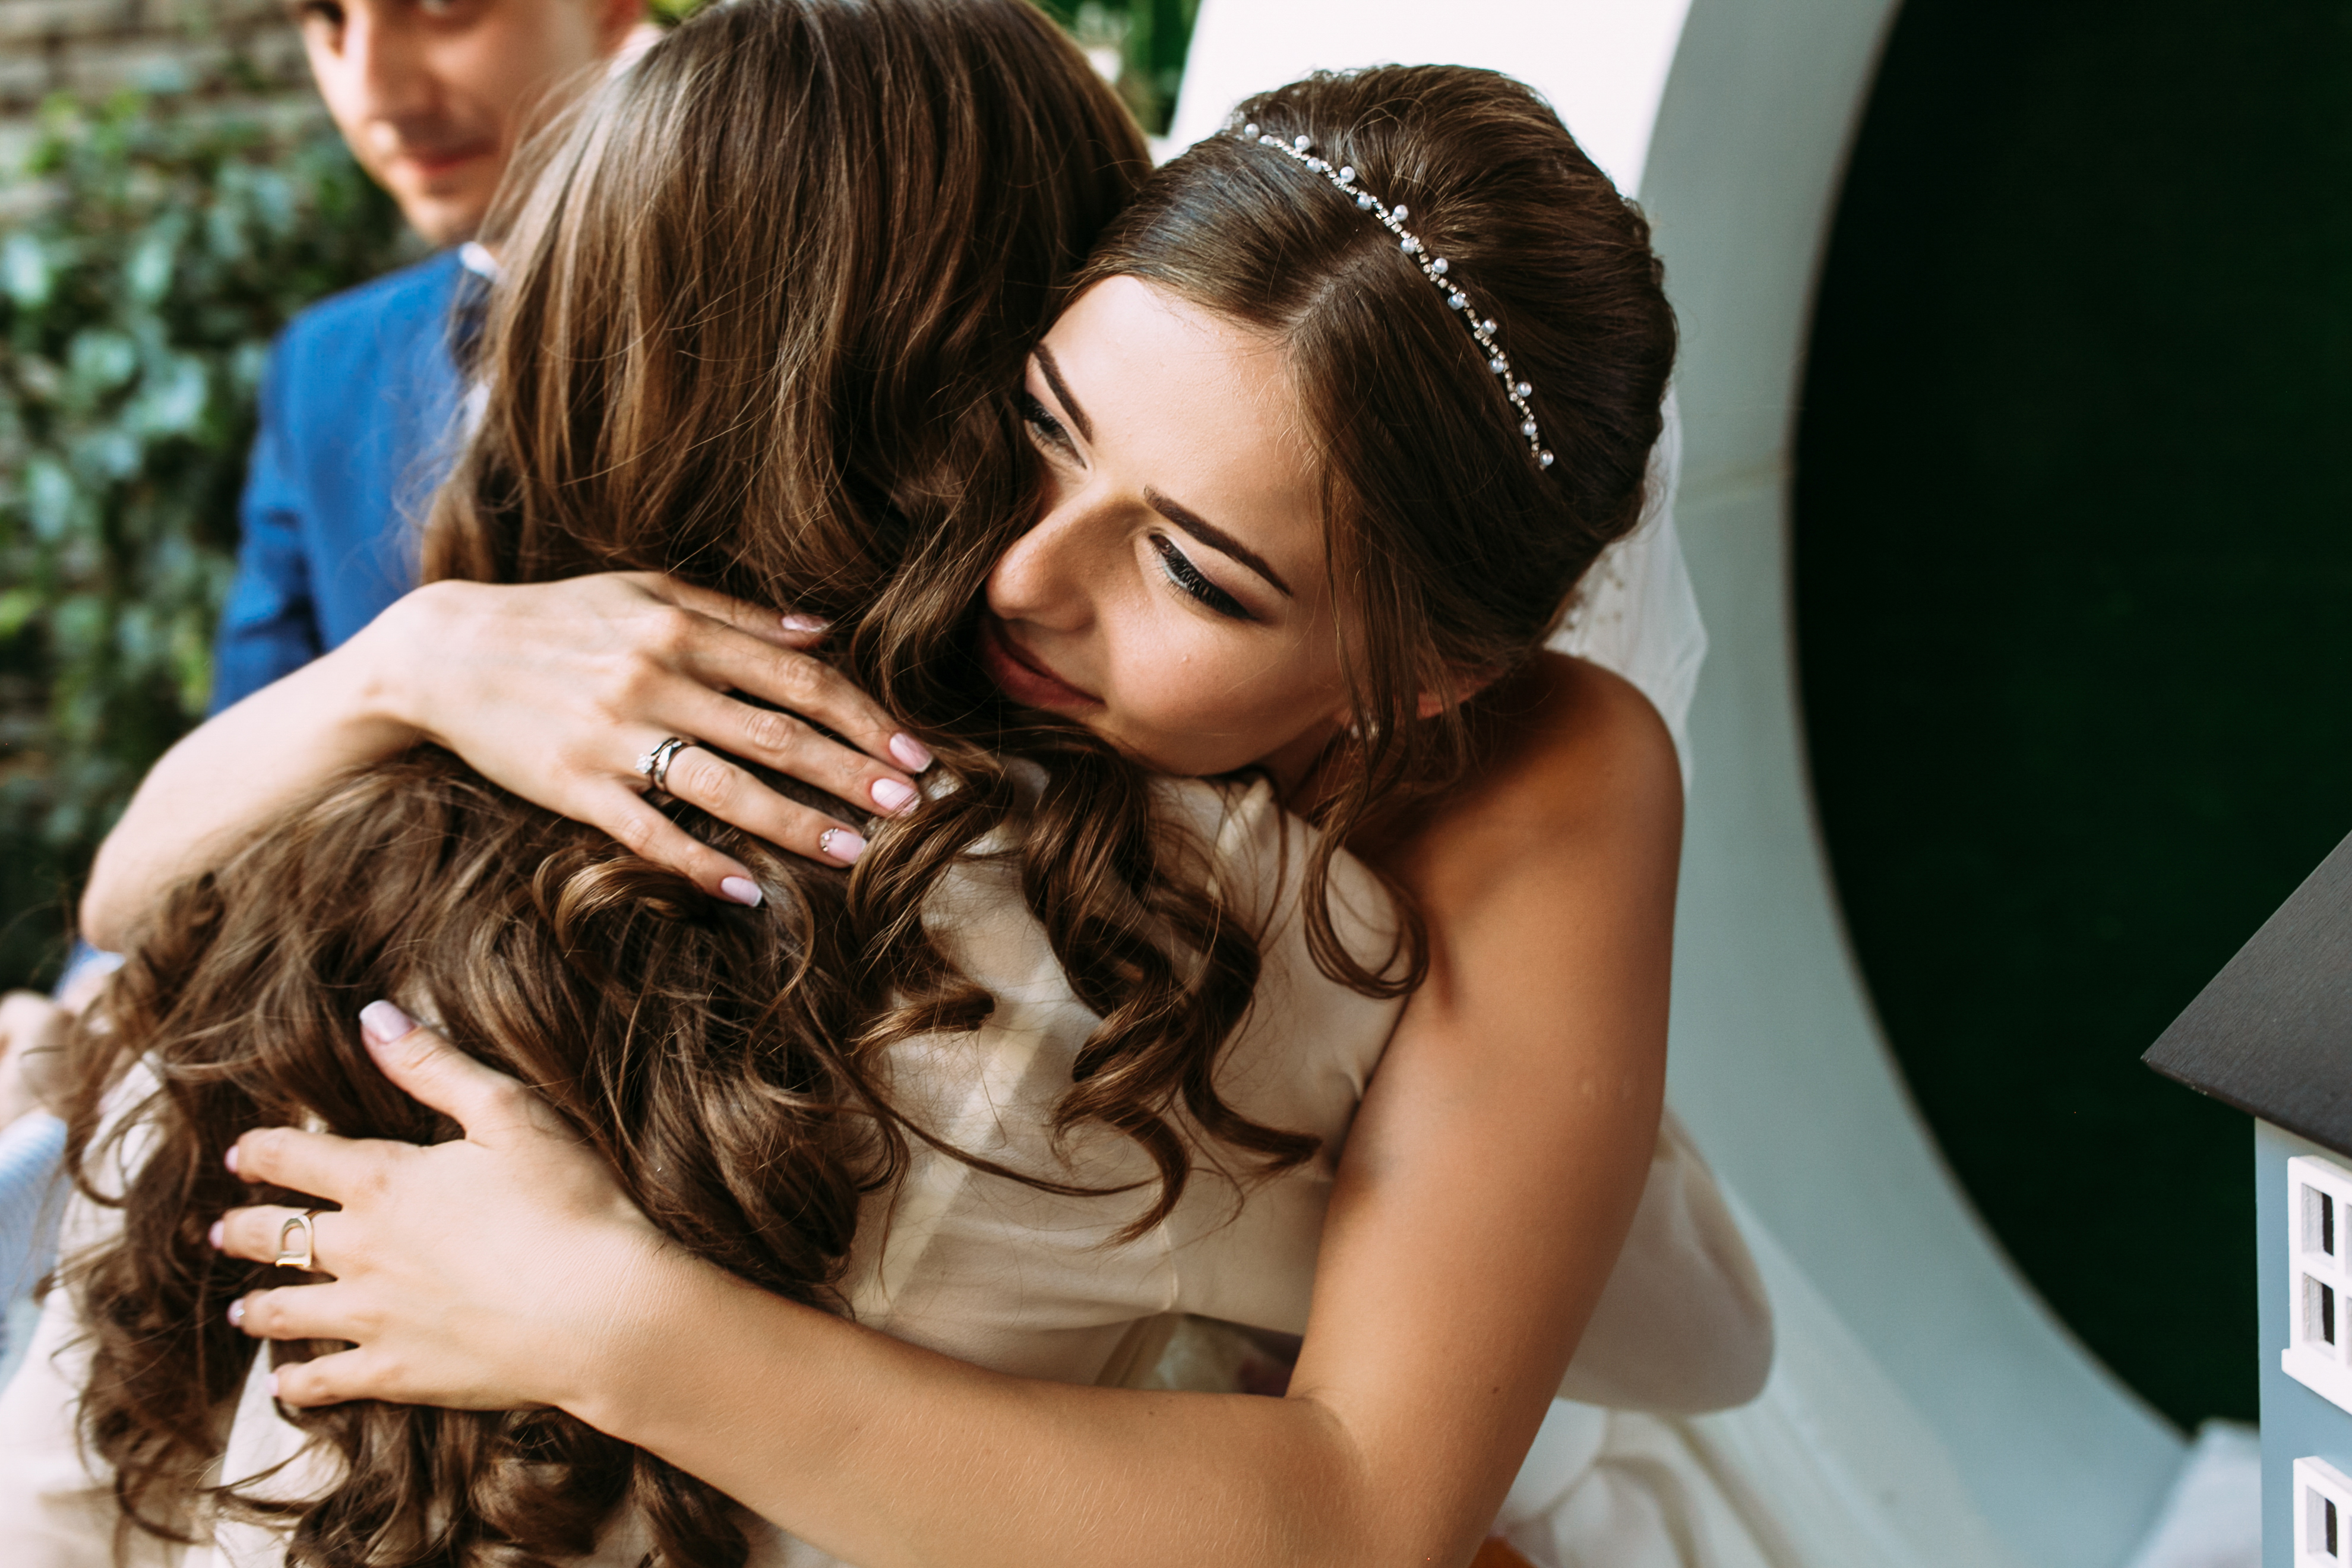 Novia abrazando a su madre en su boda | Foto: Shutterstock